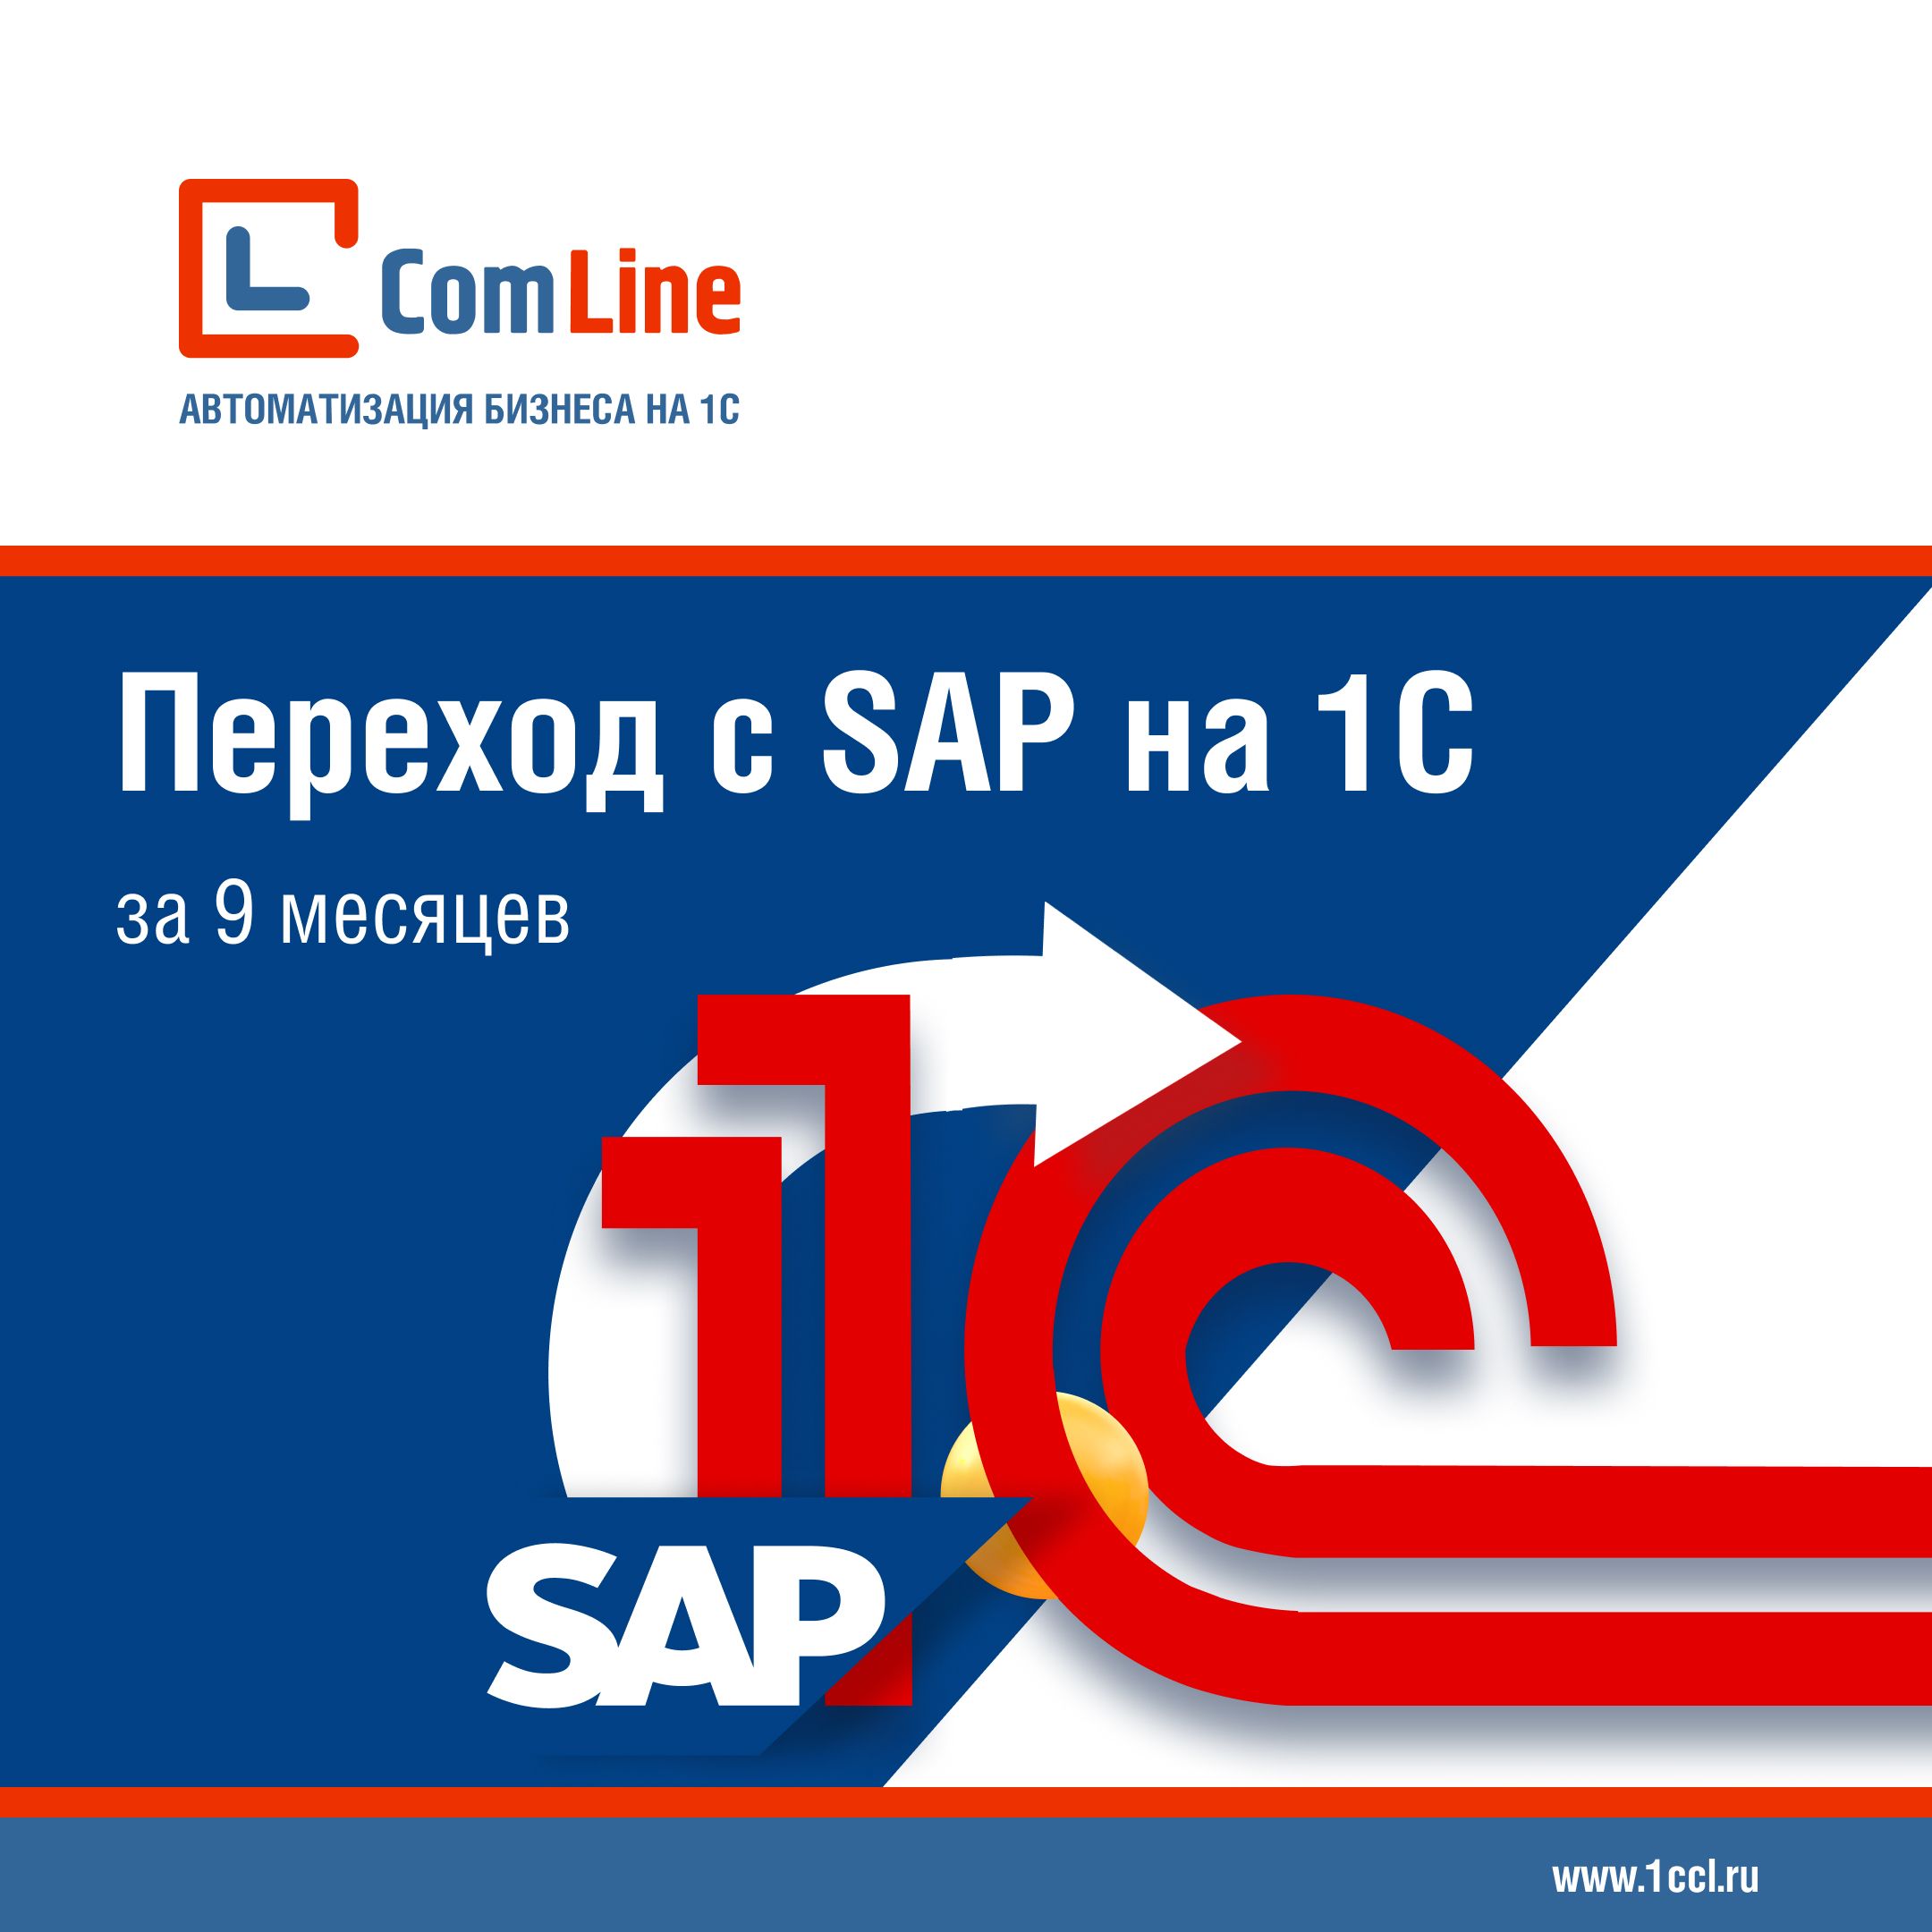 ГК КомЛайн выступит на IX конференции по «1С:ERP» с докладом про переход с SAP на 1C